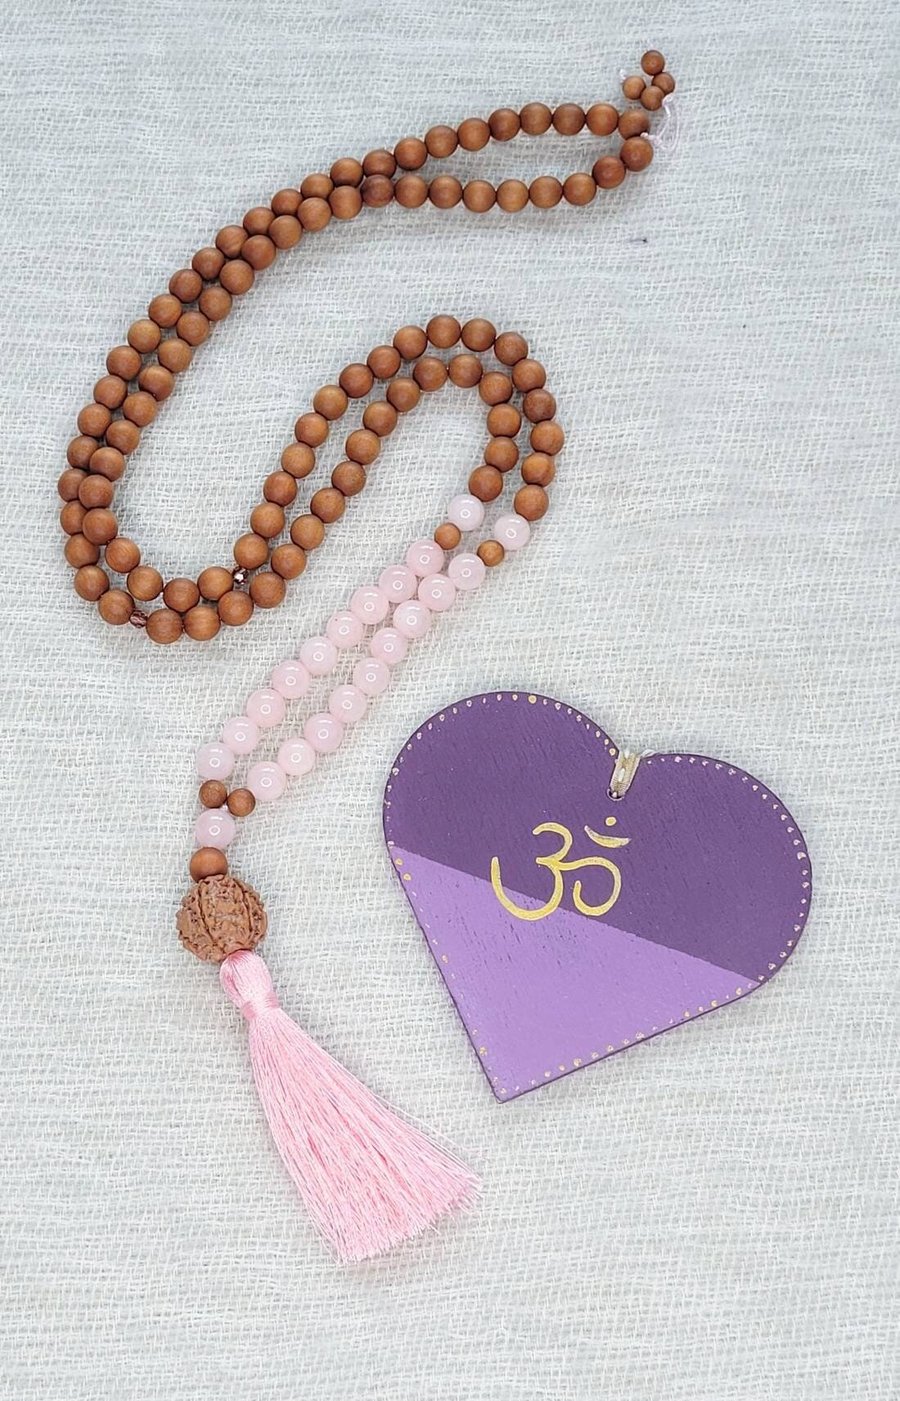 UNCONDITIONAL LOVE Mala Beads, Mala Necklace 108, Women's Yoga Gift, Chakra Bala